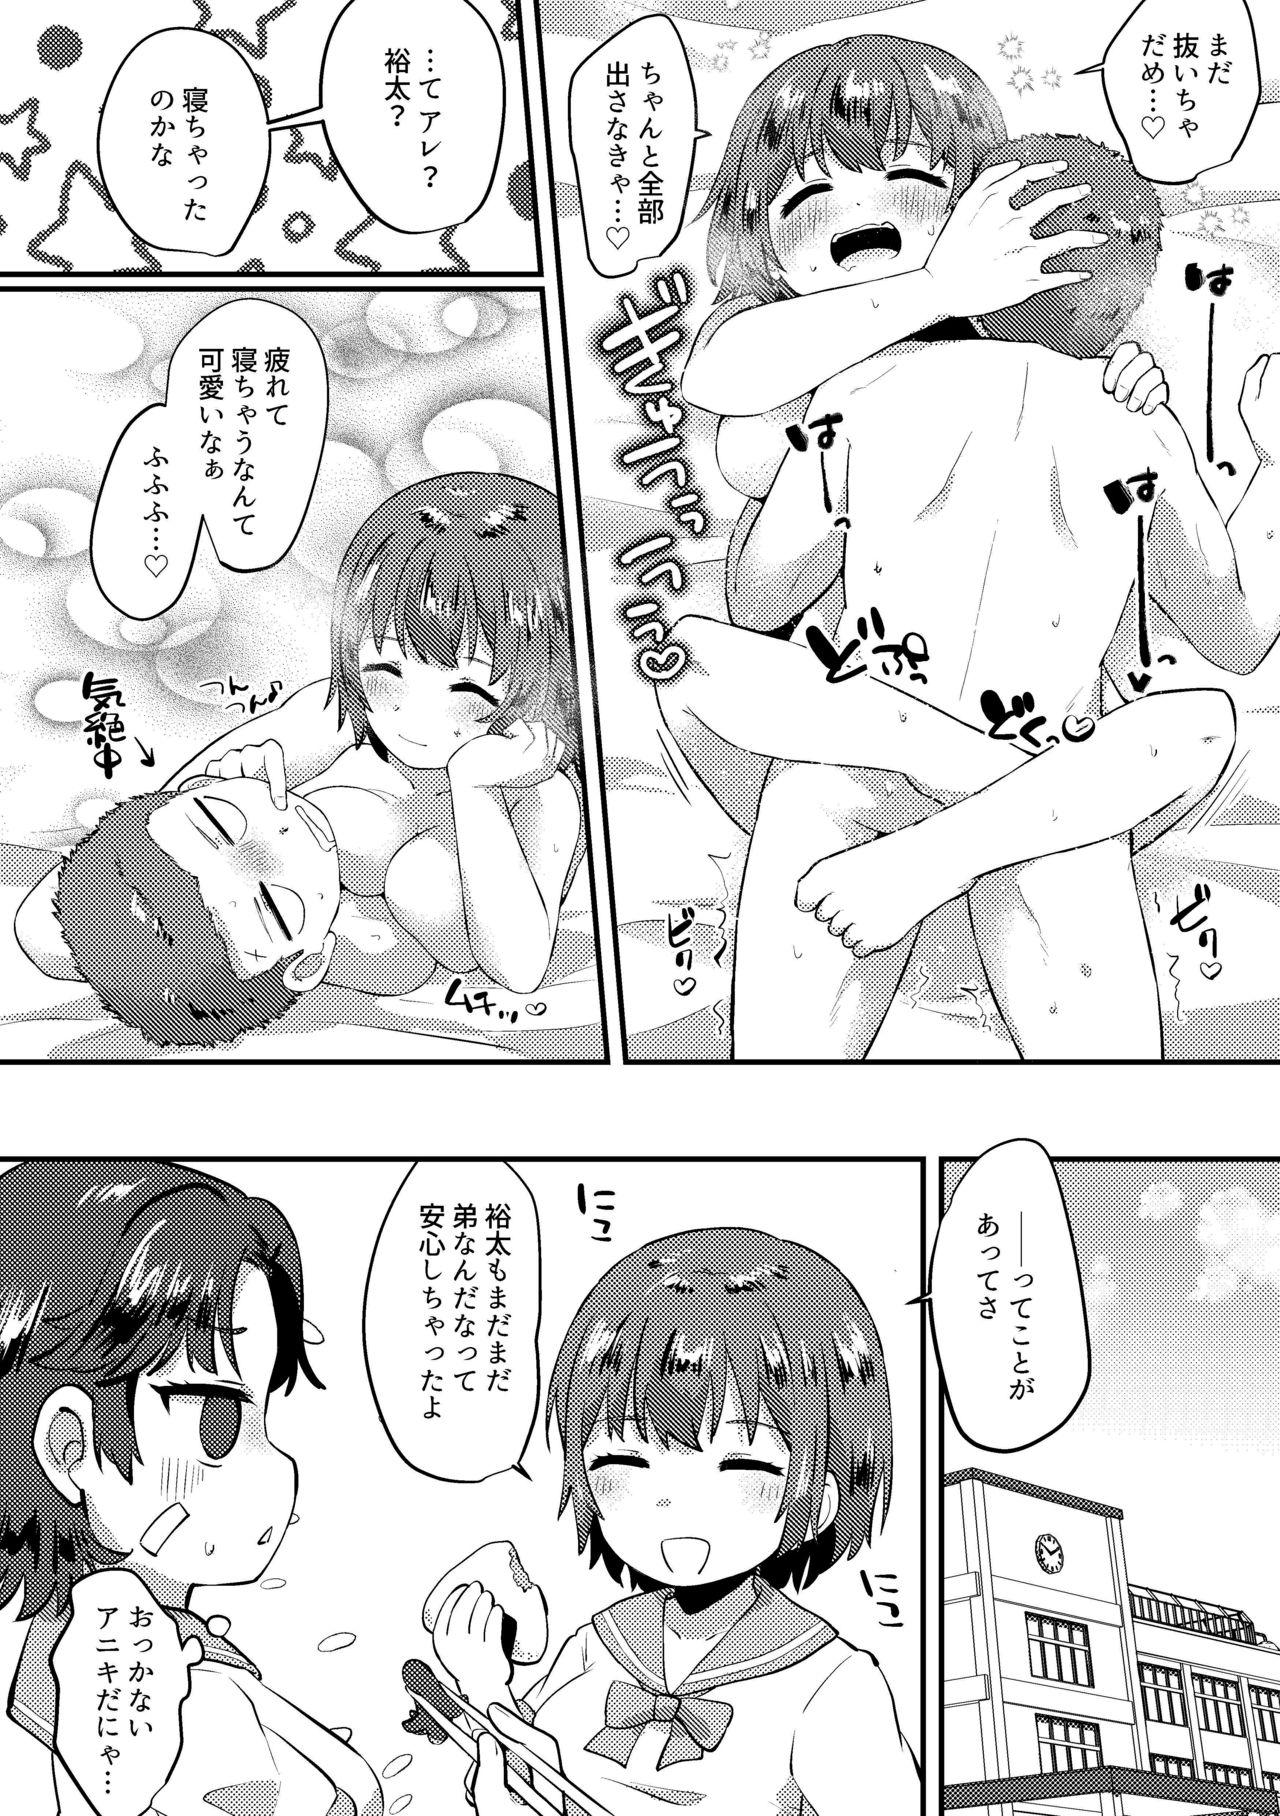 Women Sucking 不二♀が弟とエッチする漫画 - Prince of tennis | tennis no oujisama Girls - Page 9